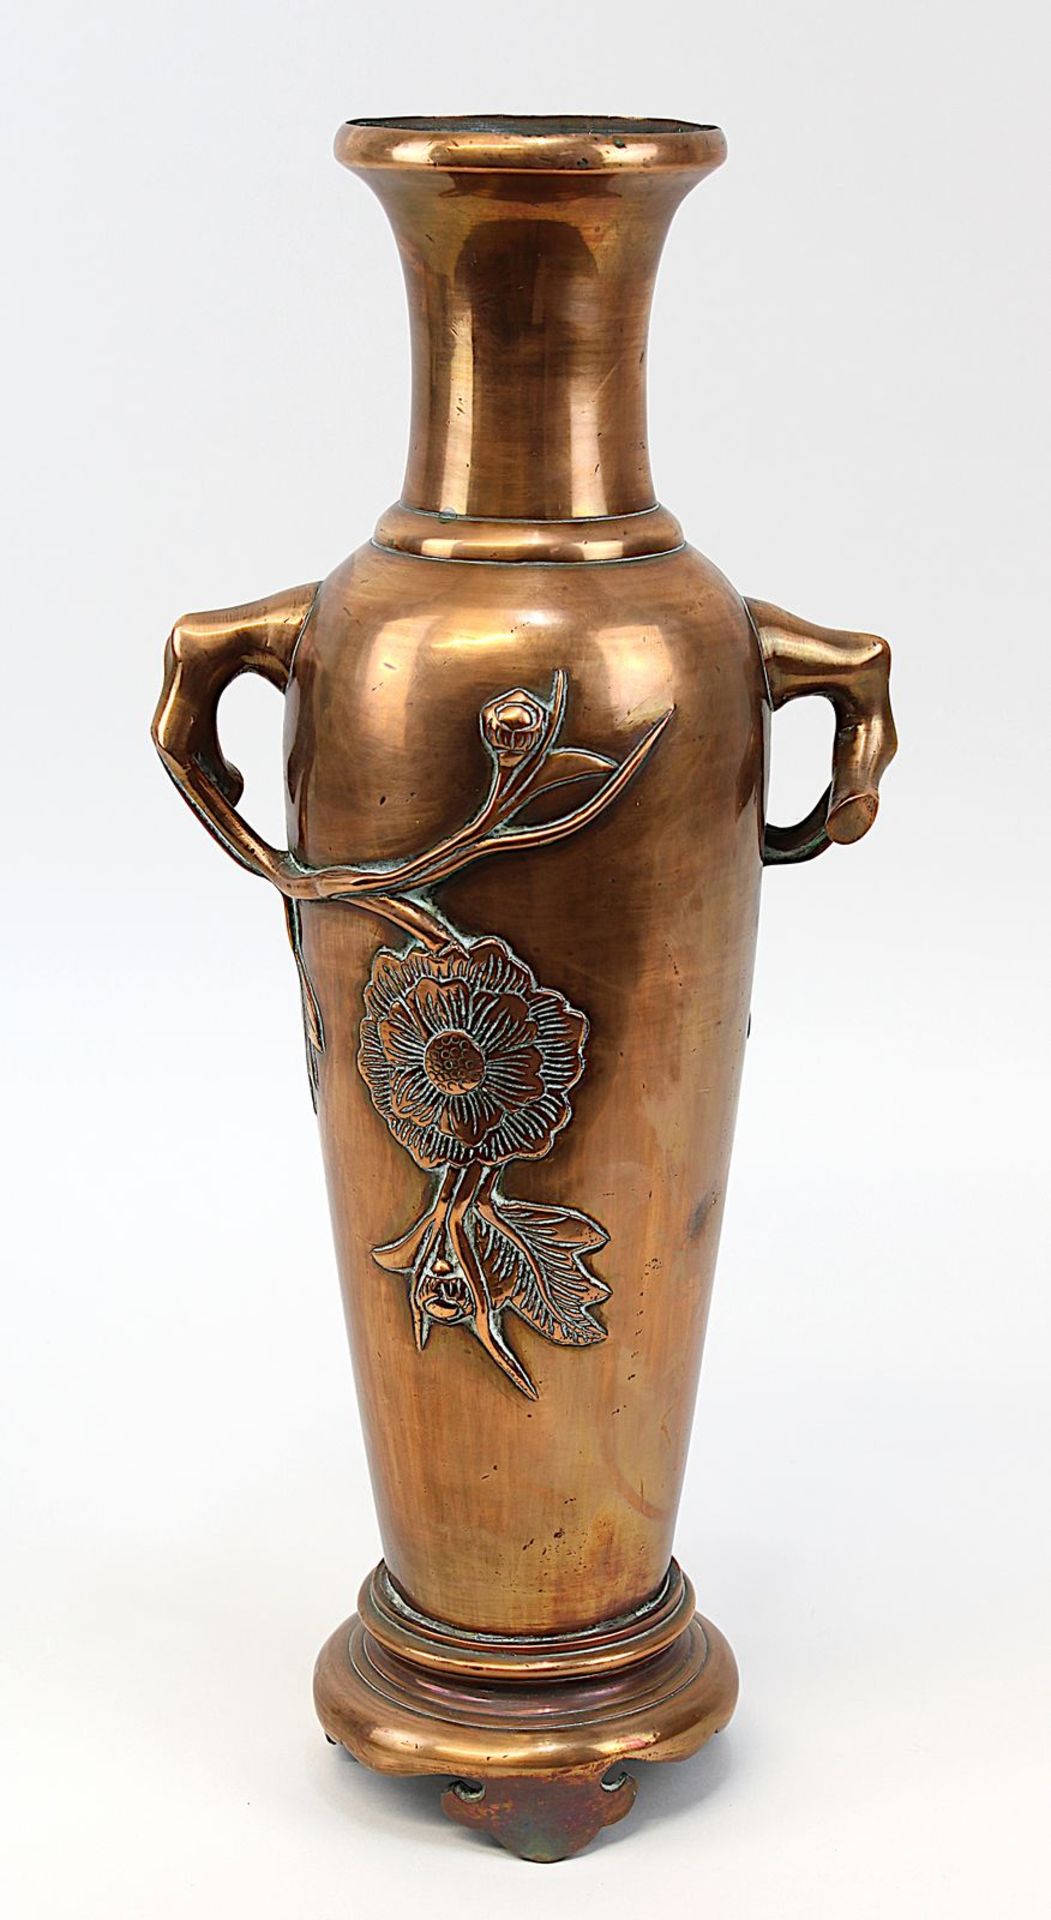 Chinesische Kupfervase, um 1900, balusterförmiger Korpus mit reliefierten Blütenzweigen, H 40 cm,